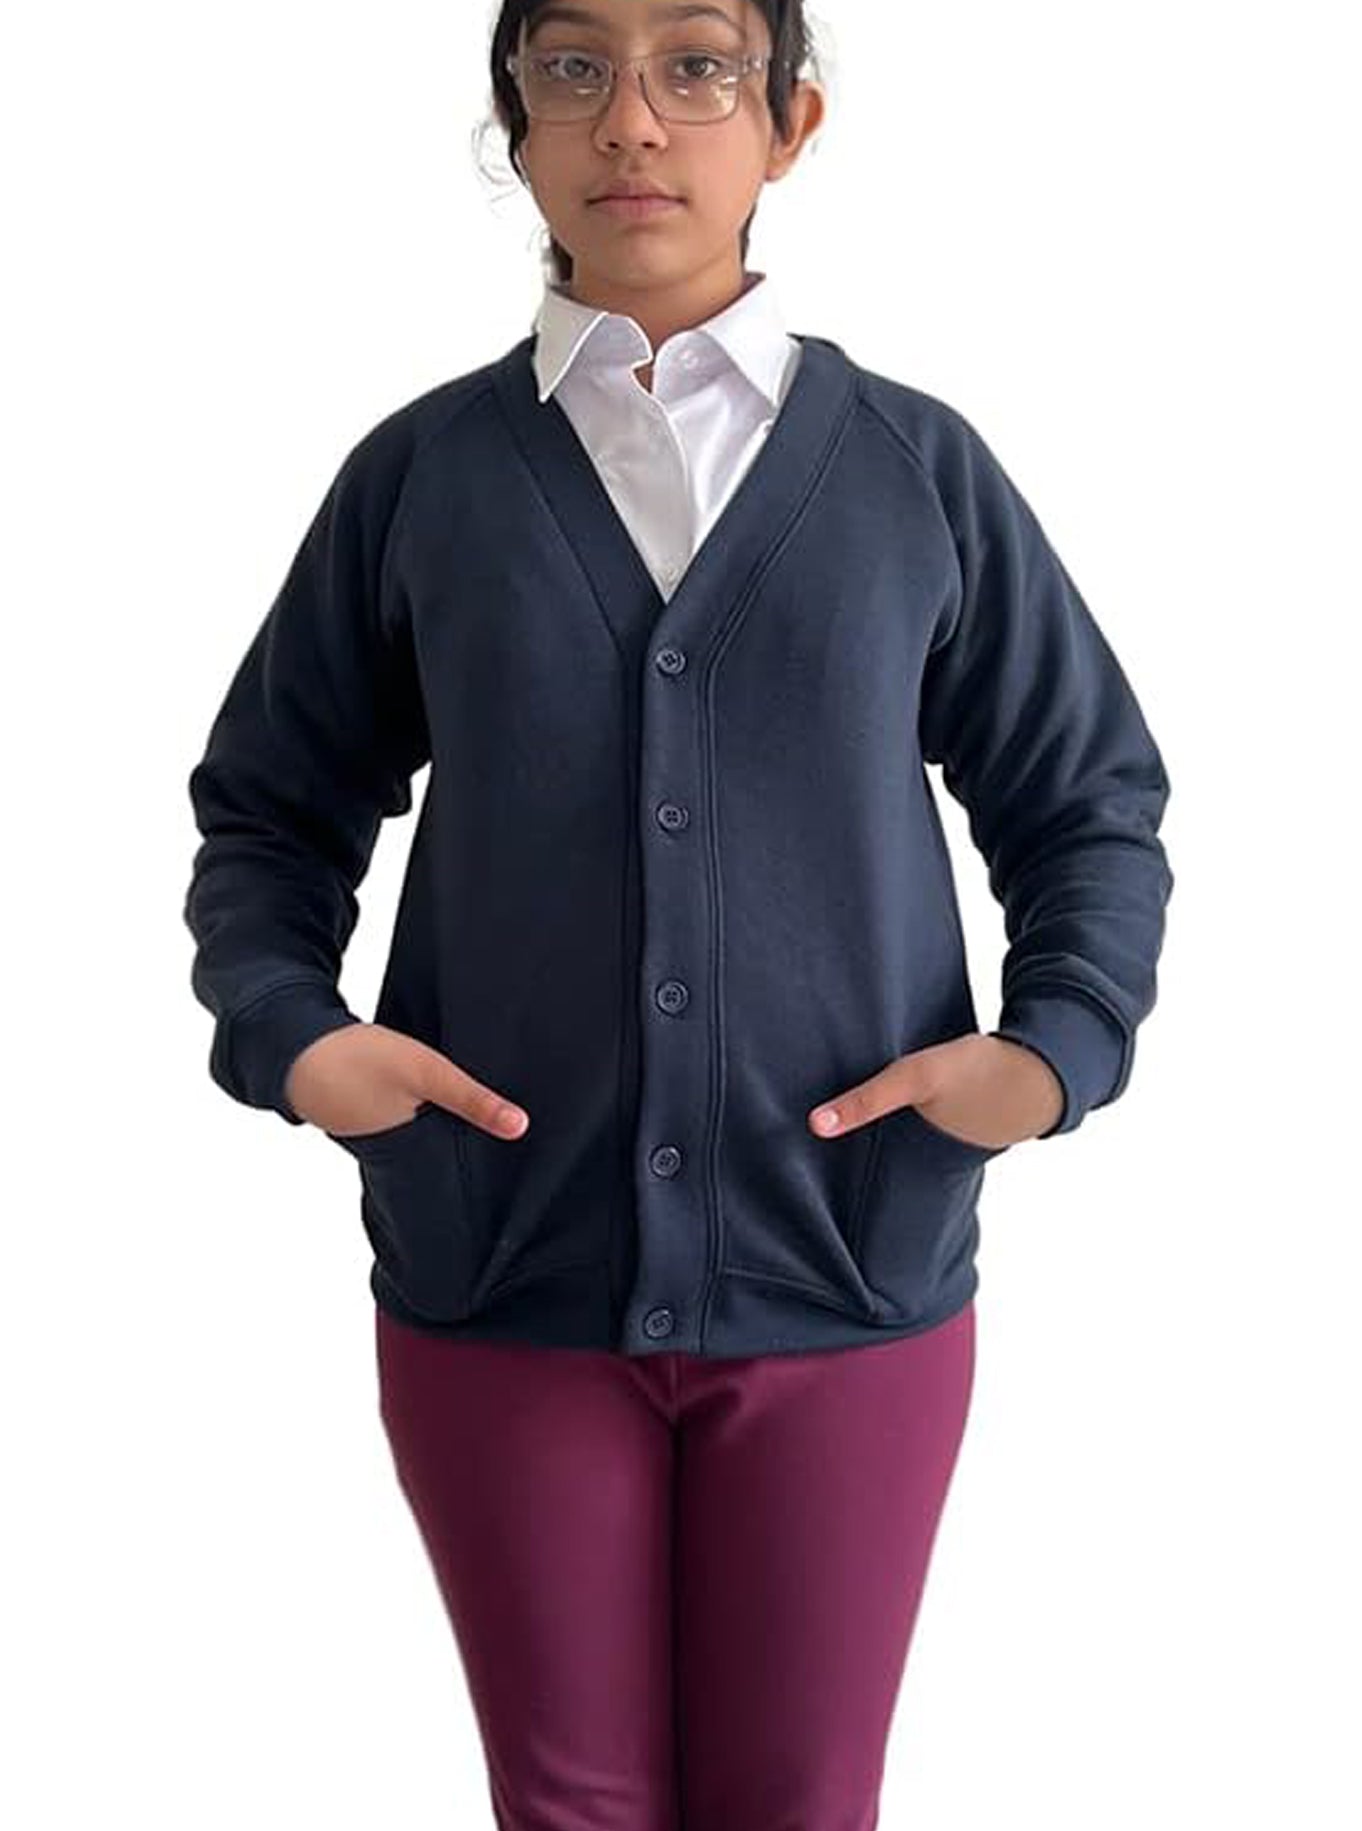 Bahob® Girls School Cardigan  Uniform for girls full sleeve cardigan. - Bahob